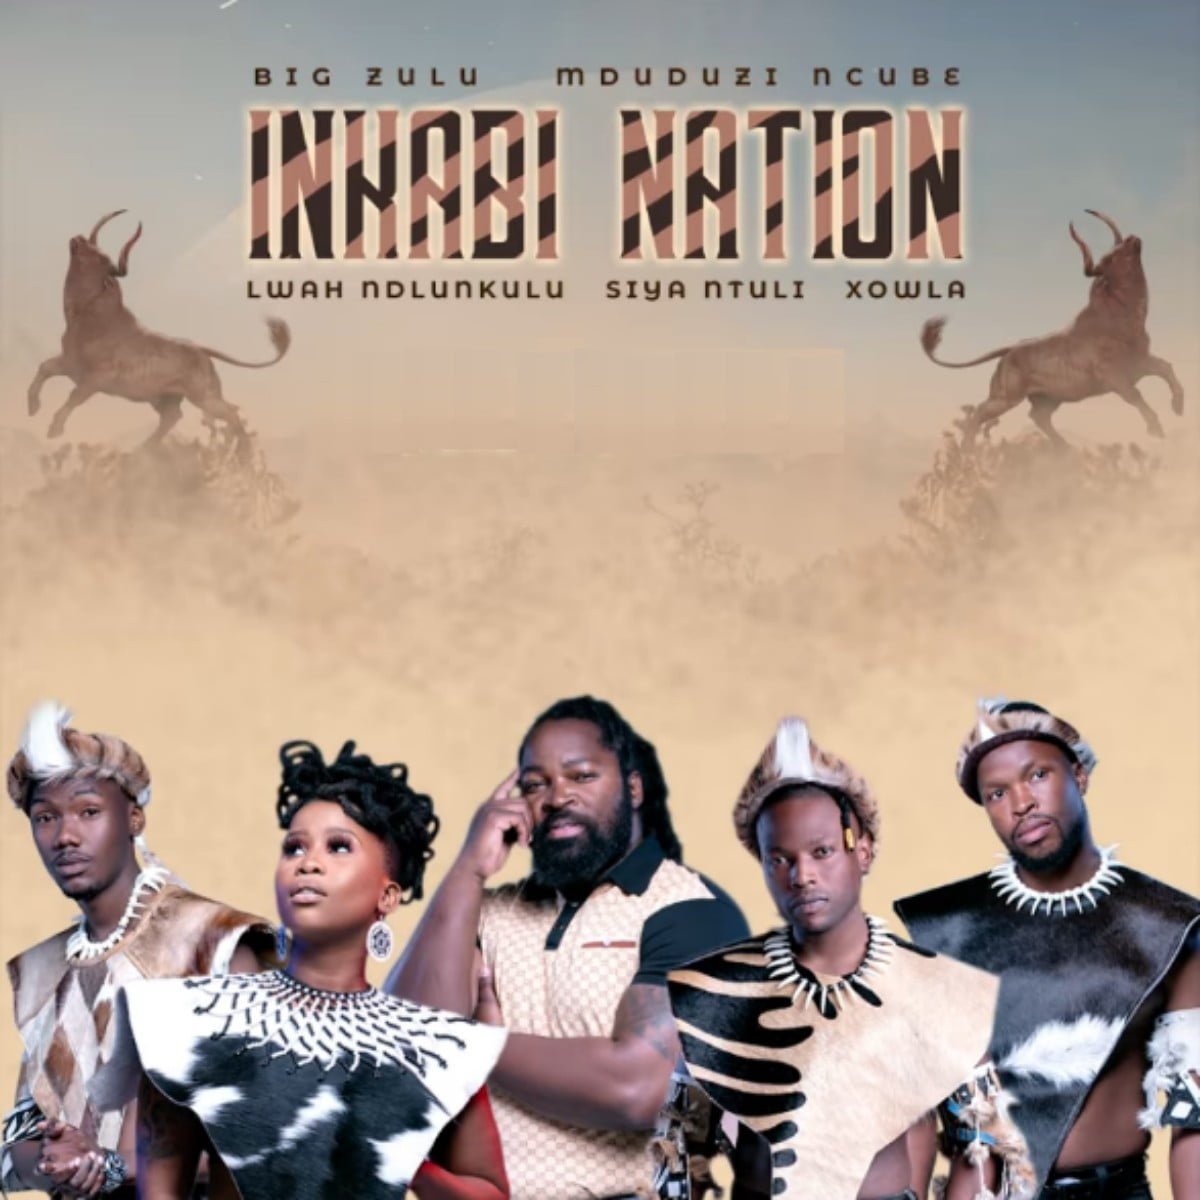 Big Zulu – Impendulo ft. Siya Ntuli, Mduduzi Ncube, Lwah Ndlunkulu mp3 download free lyrics